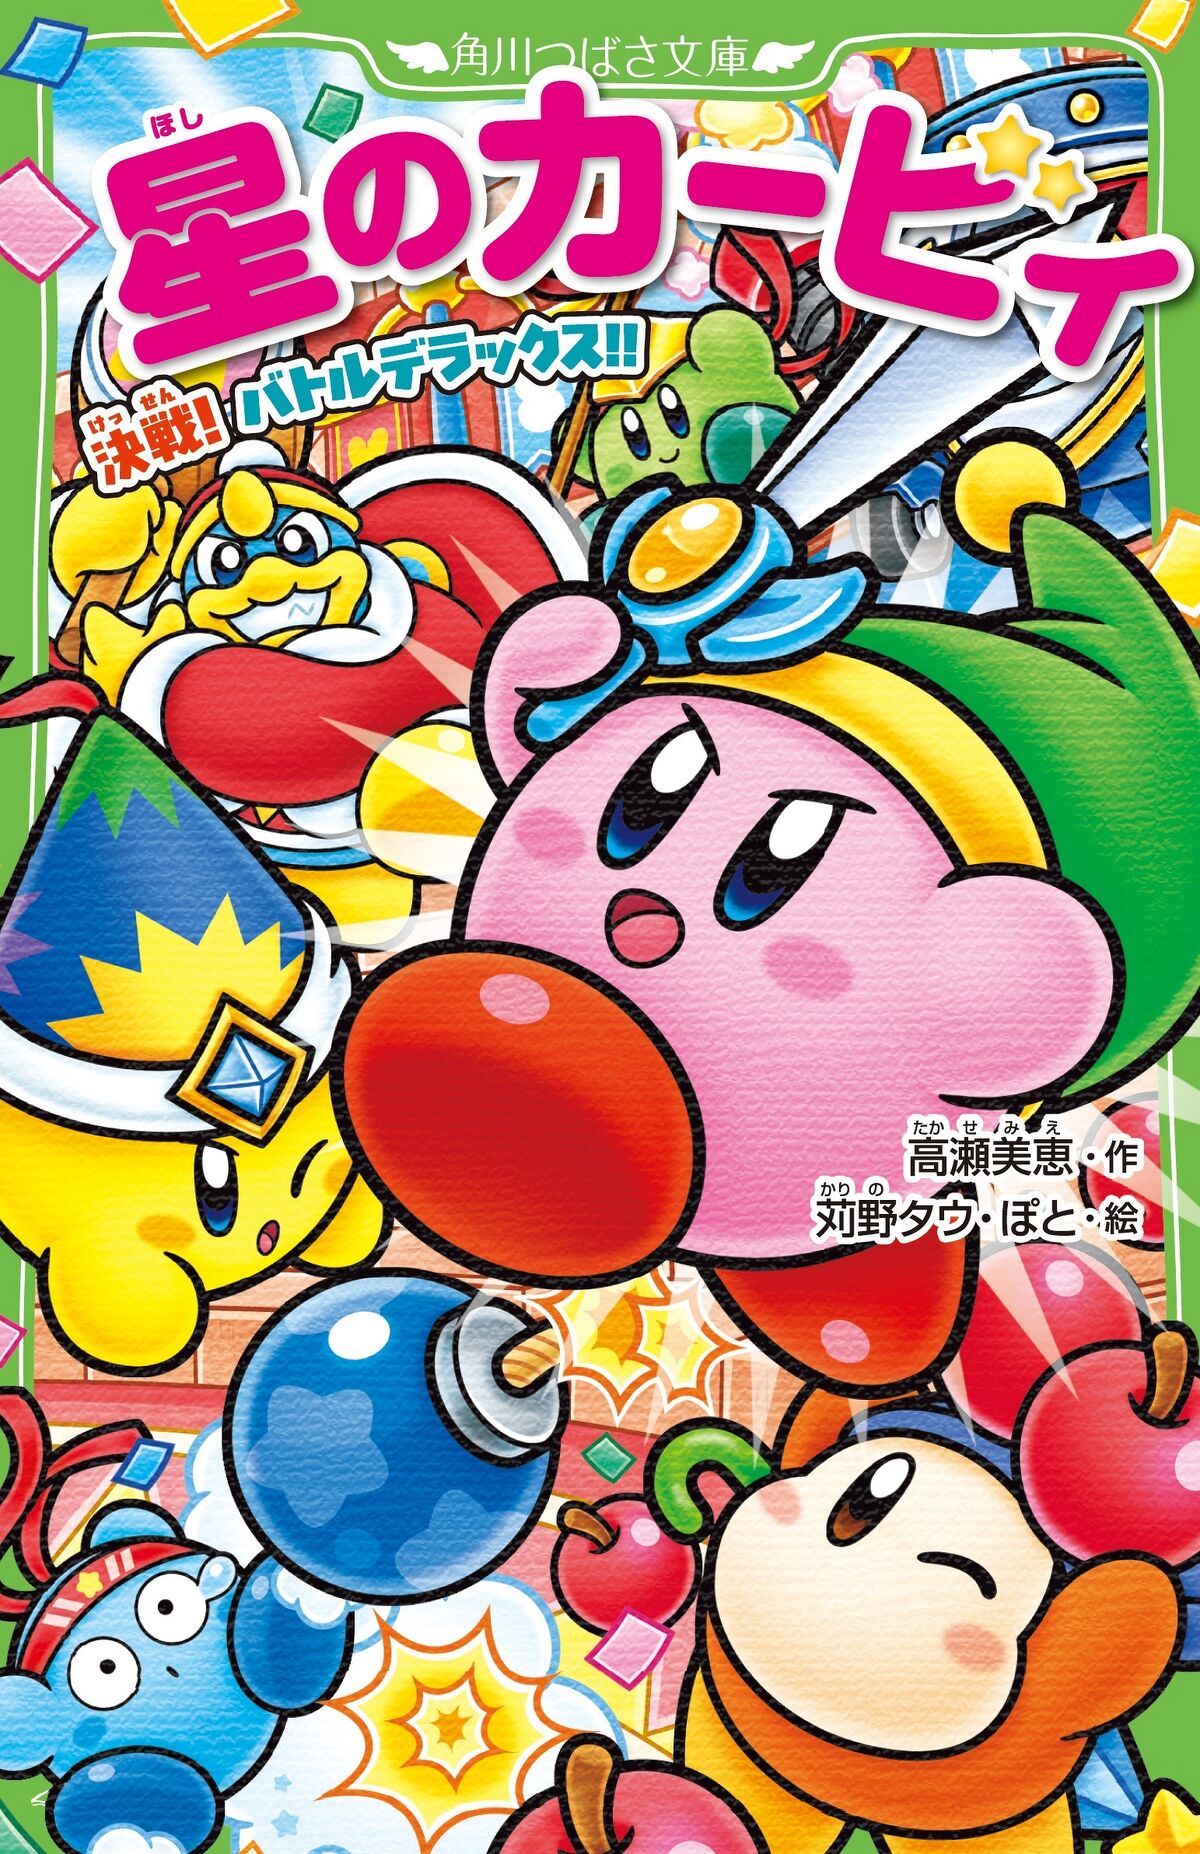 Kirby Battle Royale - Wikipedia